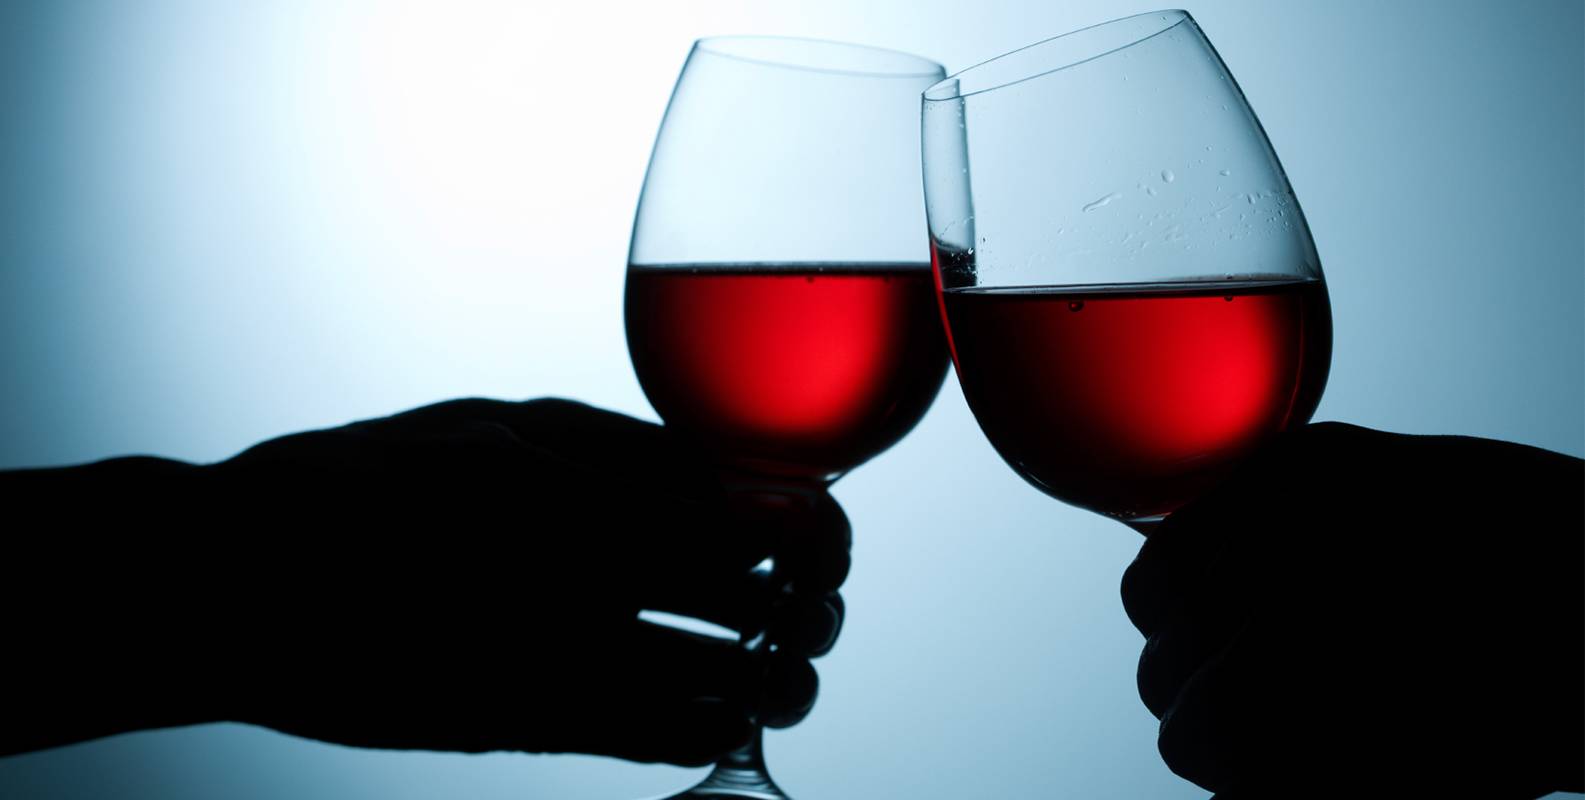 Пара бокалов вина. Фужер с вином. Два бокала красного вина. Бокалы с вином чокаются. Бокал красного вина.